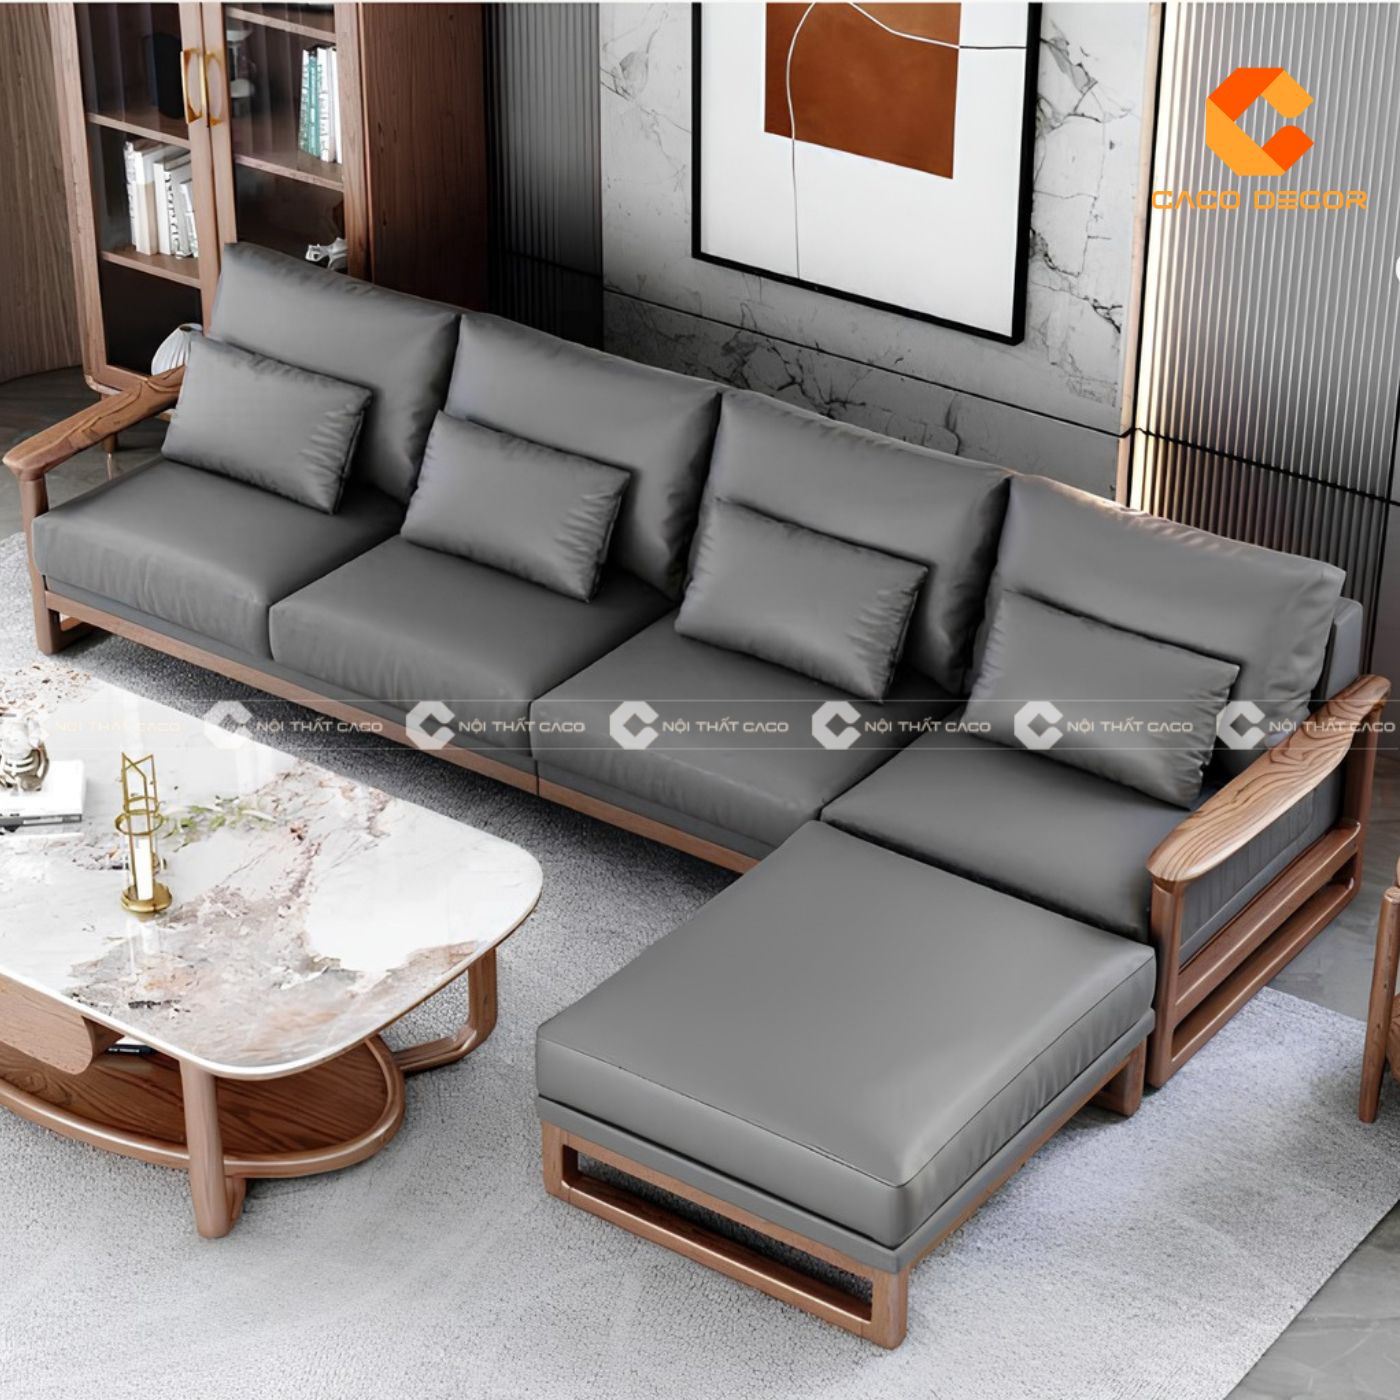 Sofa gỗ hiện đại lựa chọn hoàn hảo cho phòng khách chung cư 10